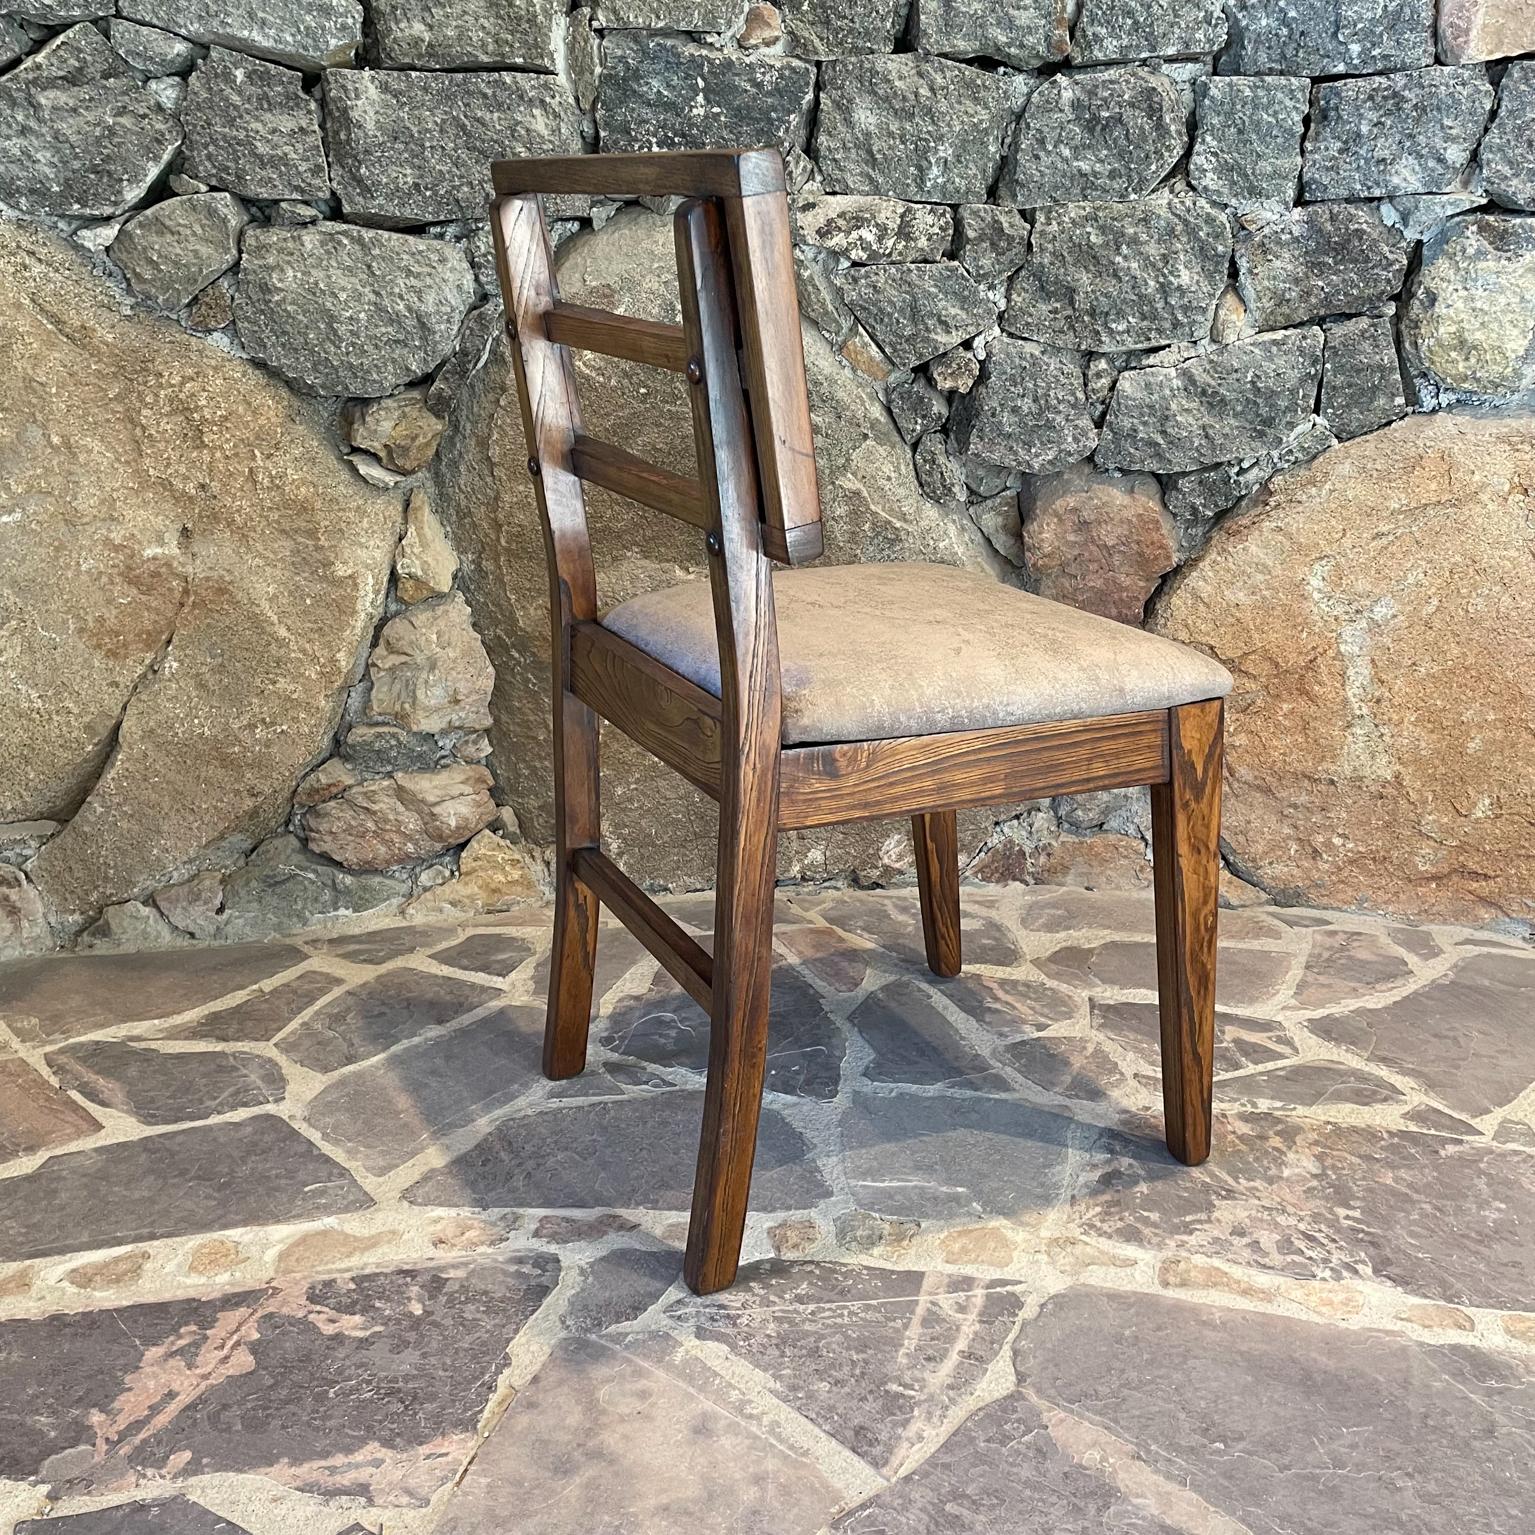 2 Modern Side Chairs in Oak, Style of Paul Laszlo Glenn of Calif 1960s Restored For Sale 3